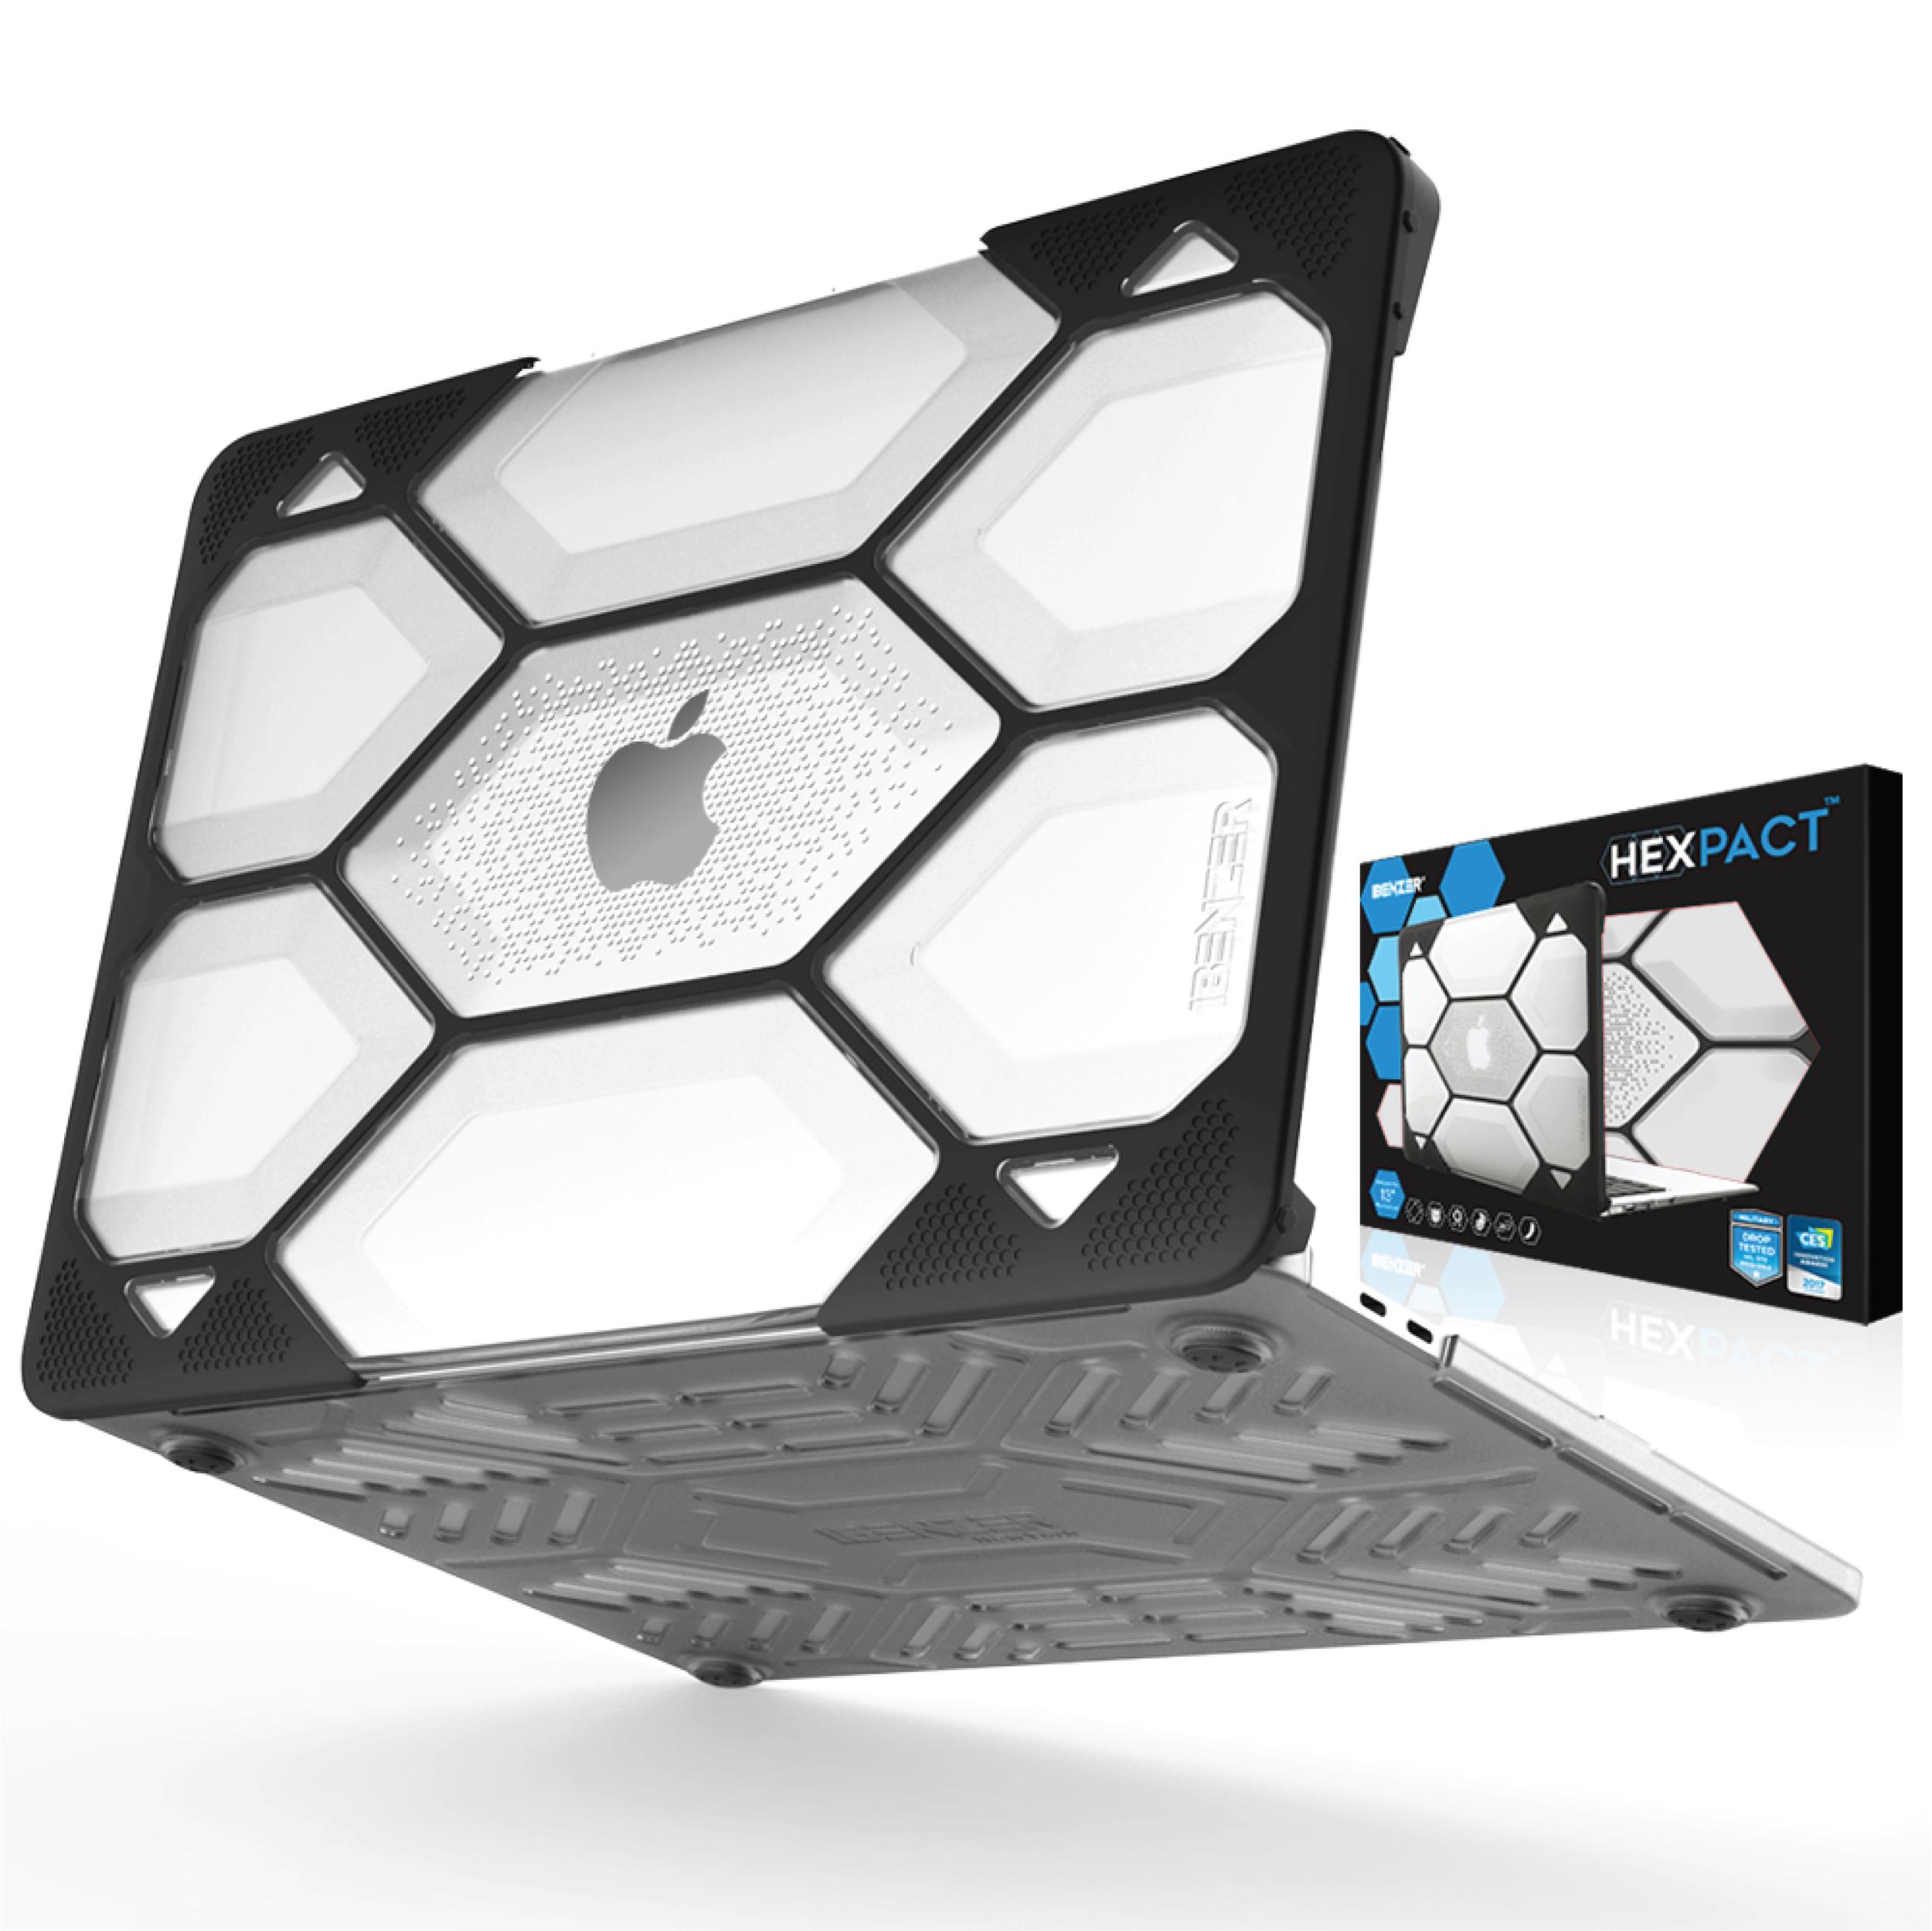 iBenzer Hexpact Clip Schutzhülle für Apple Macbook Pro 13 (2016-2018) - Transparent